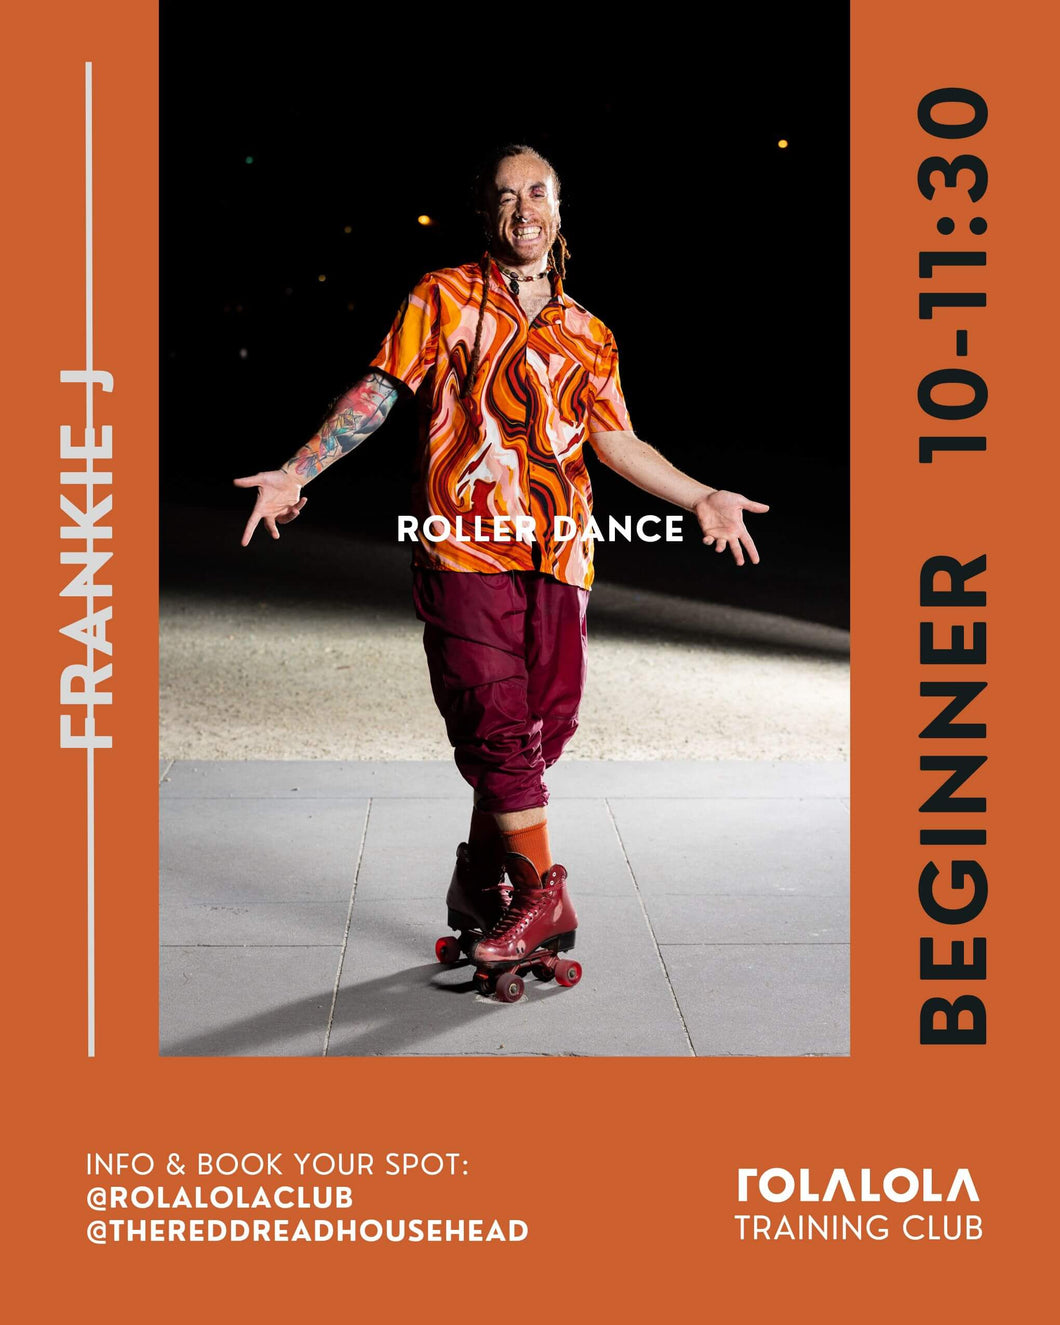 Beginner/Intermediate Roller Dance workshop by Frankie J